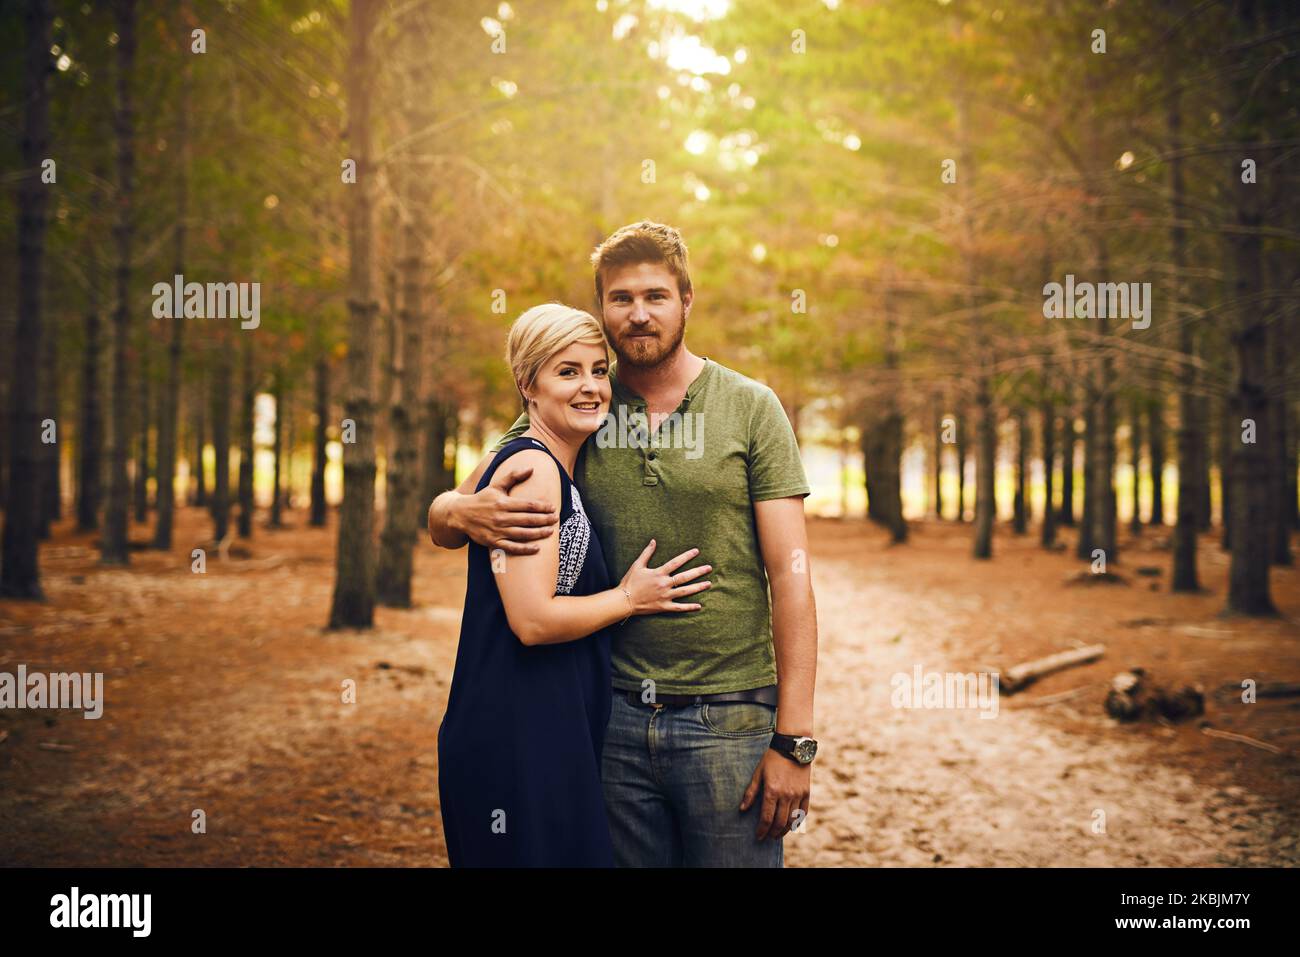 Les enfants heureux sont des parents heureux. Un couple aimant s'embrassant dans un câlin tout en se tenant dehors dans les bois. Banque D'Images